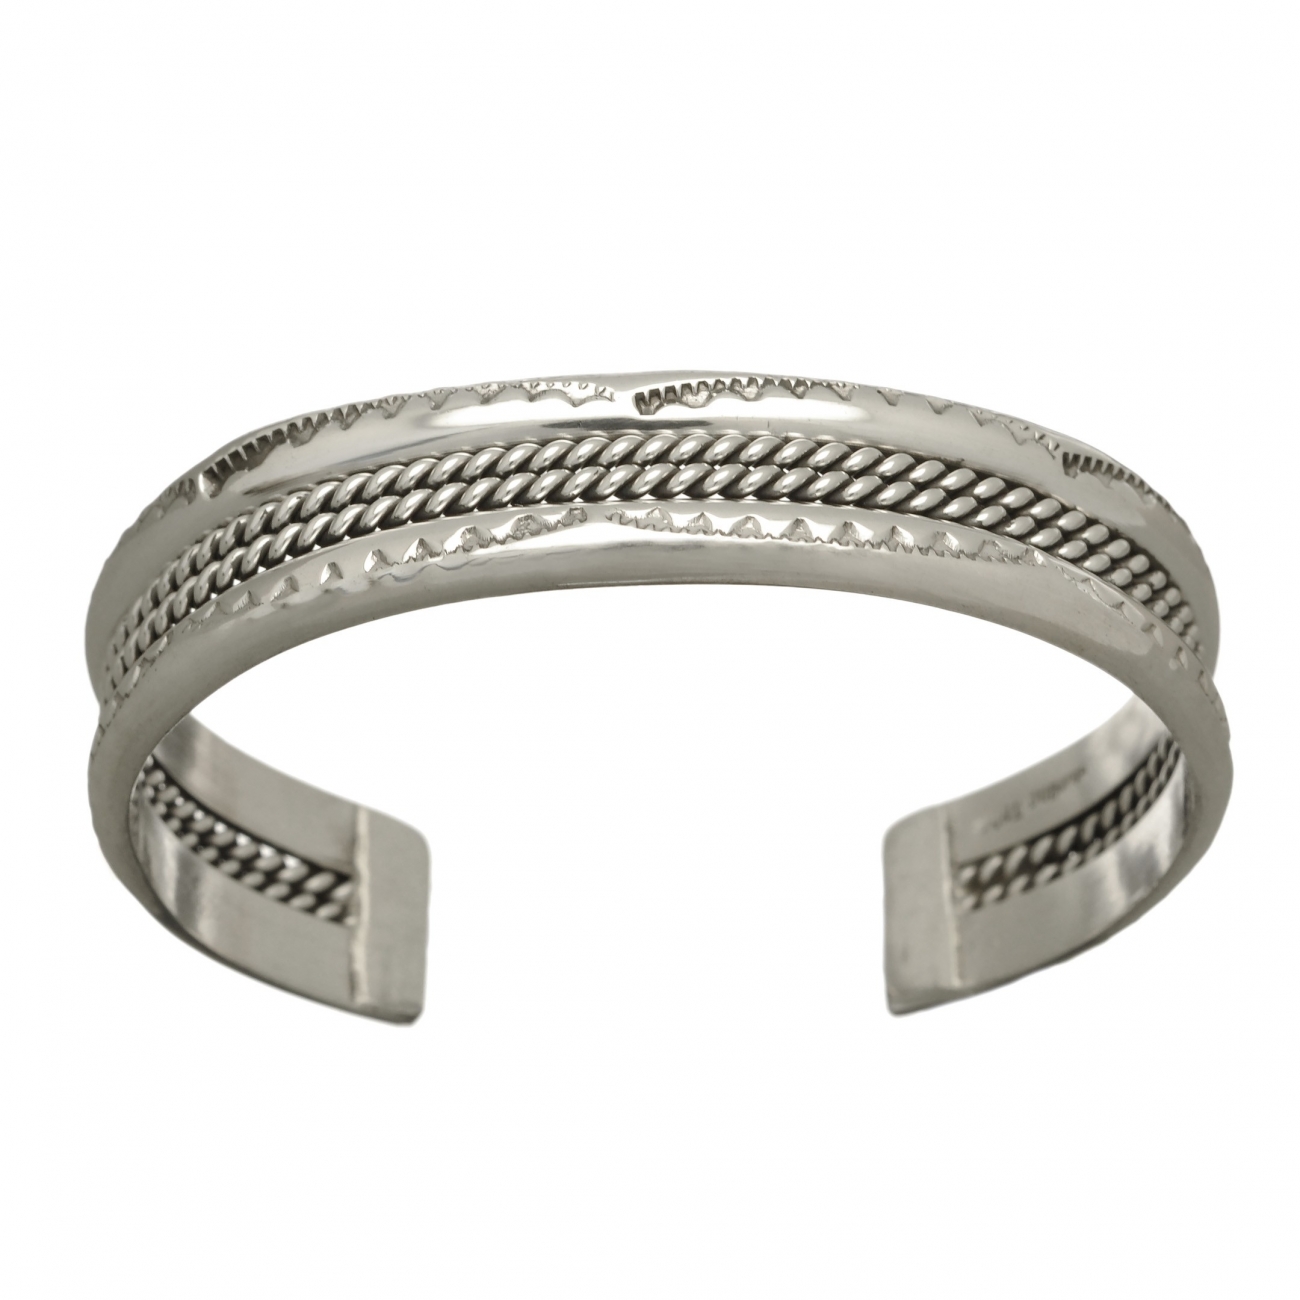 Navajo bracelet BRw24 for women in silver - Harpo Paris